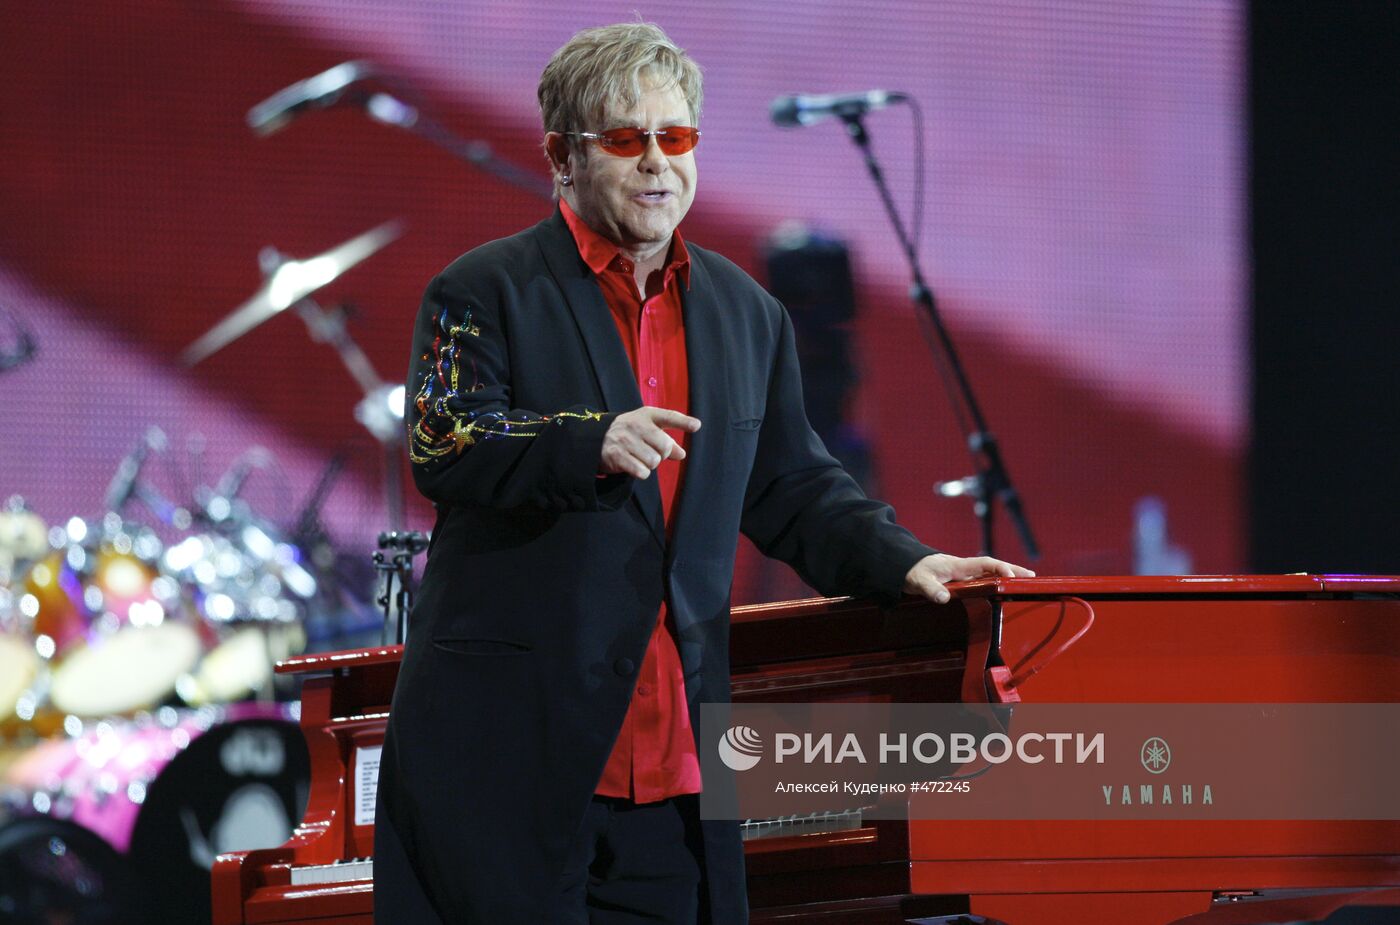 Концерт Элтона Джона в СК "Олимпийский" в Москве